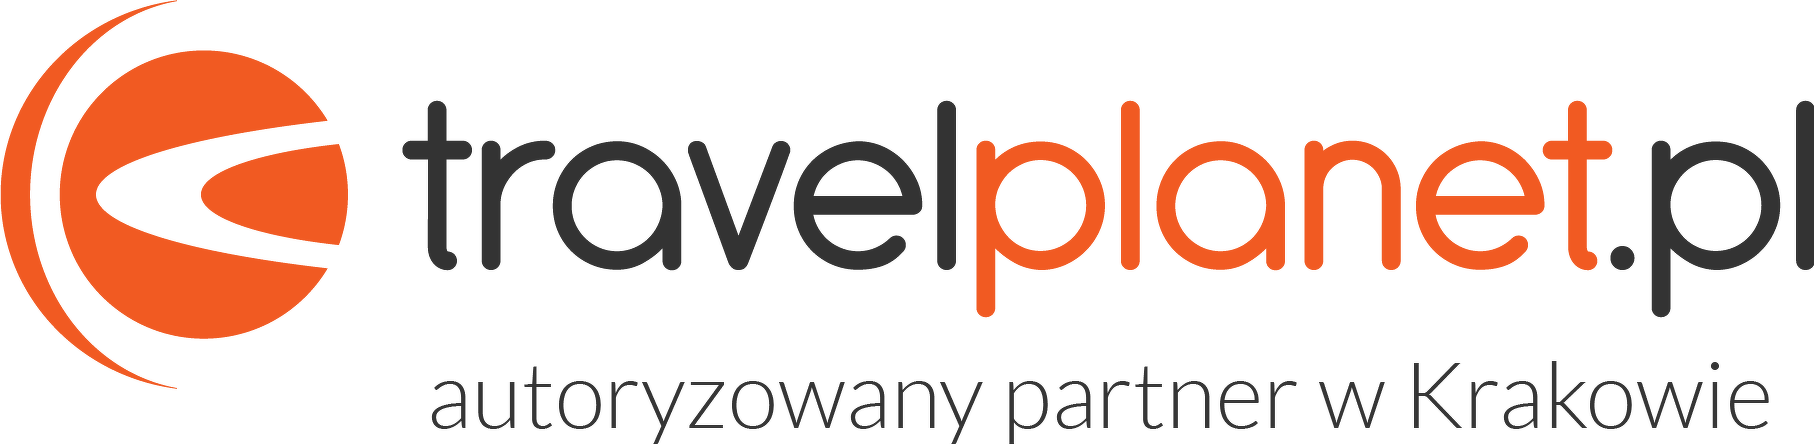 TravelPlanet - Autoryzowany Partner w Krakowie